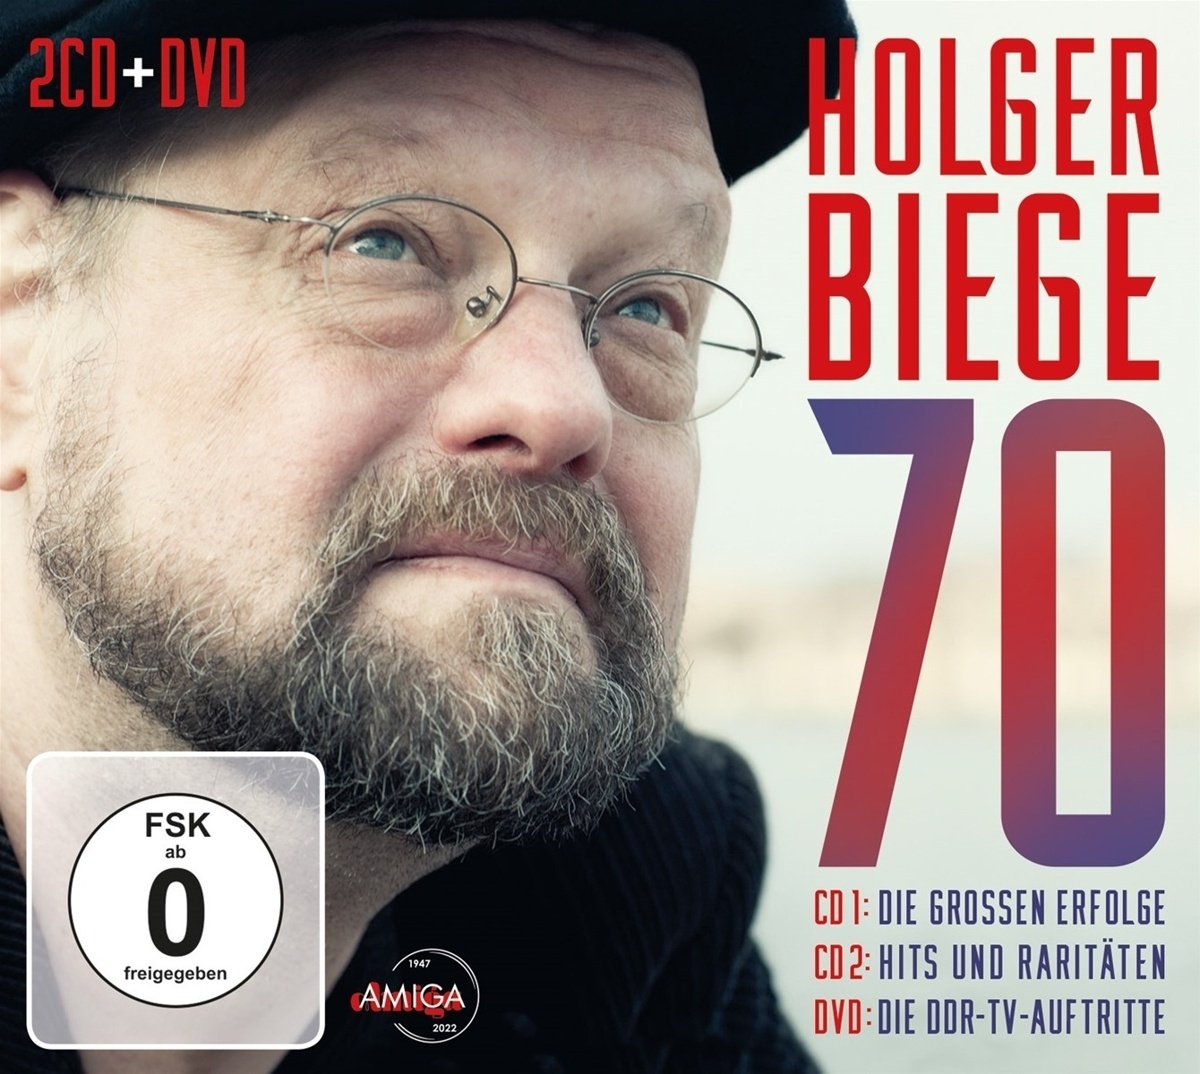 Holger Biege 70 - Holger Biege. (CD mit DVD)